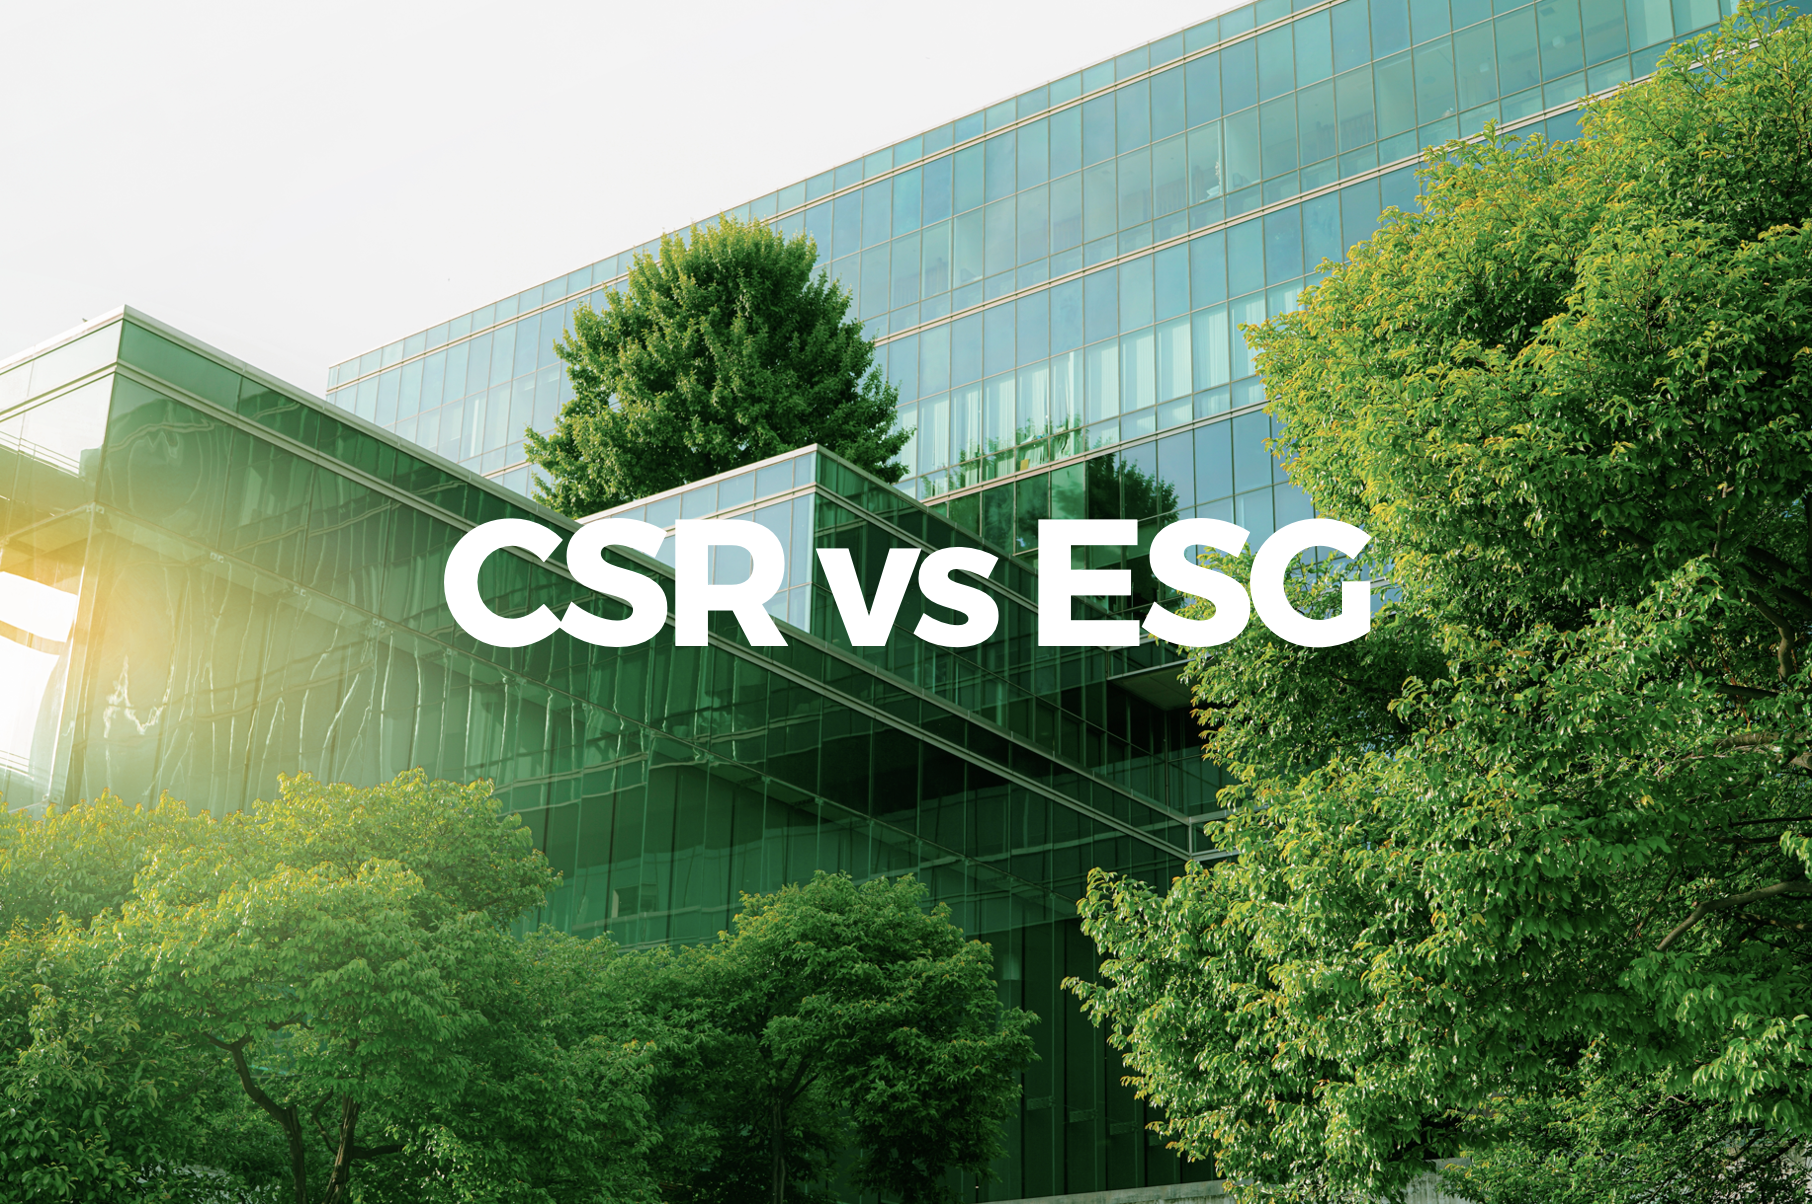 CSR_vs_ESG_Windo